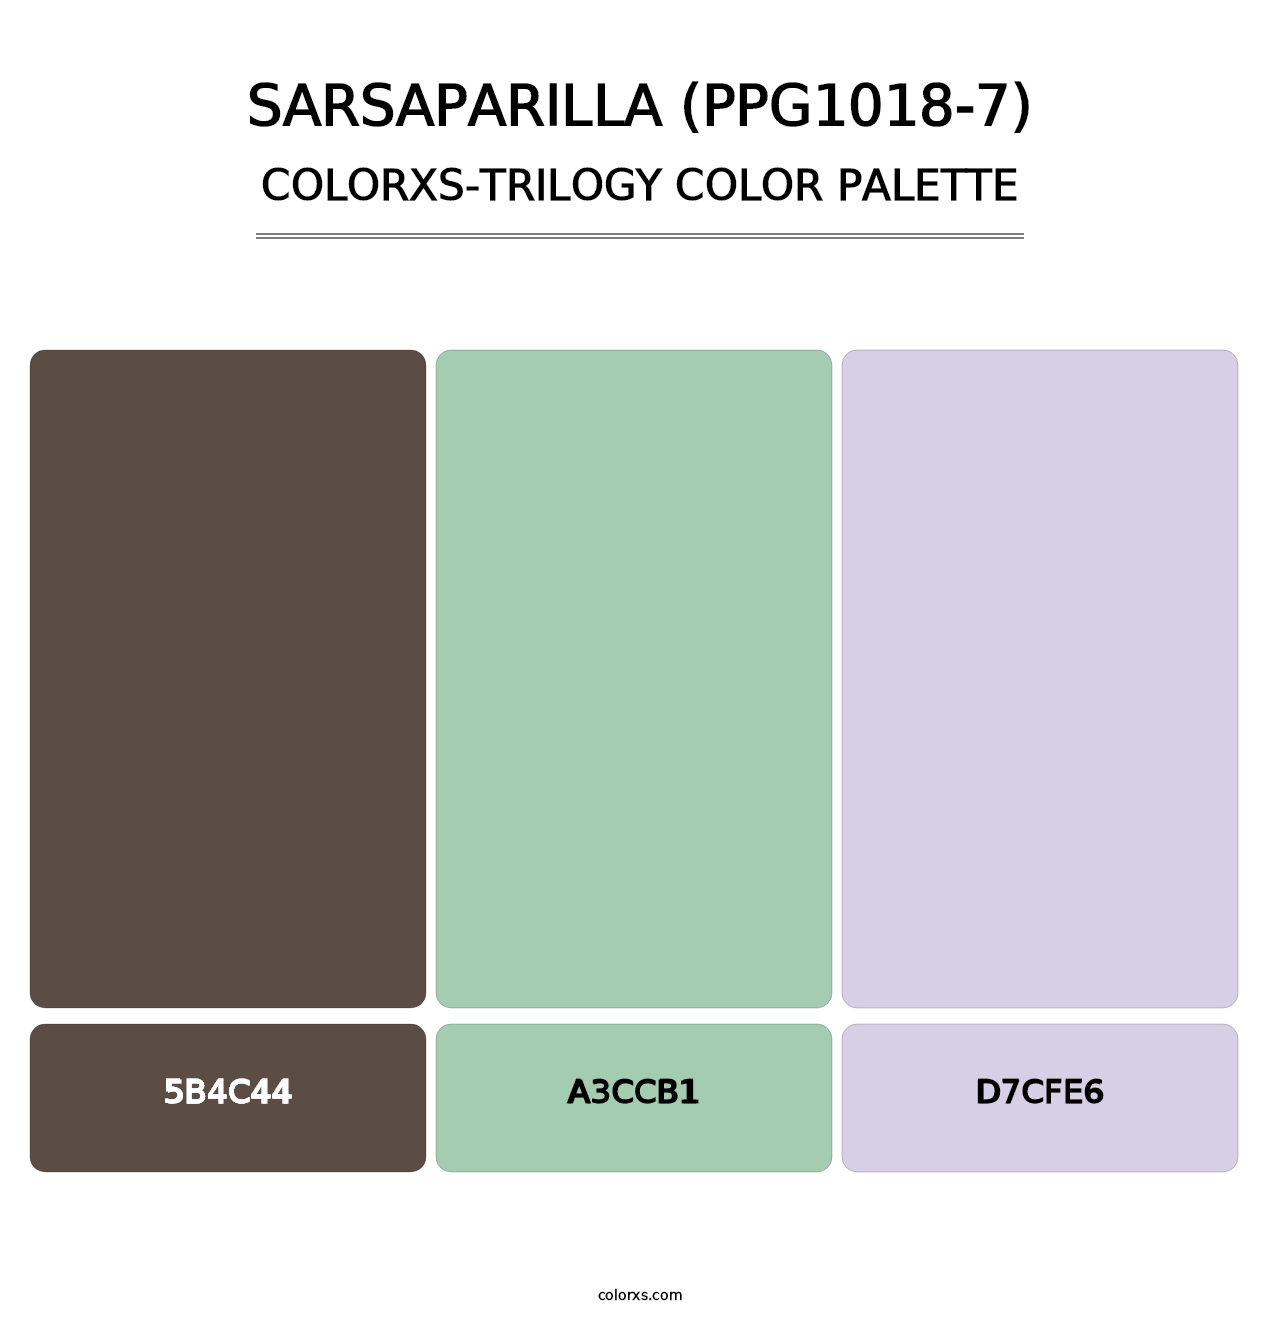 Sarsaparilla (PPG1018-7) - Colorxs Trilogy Palette